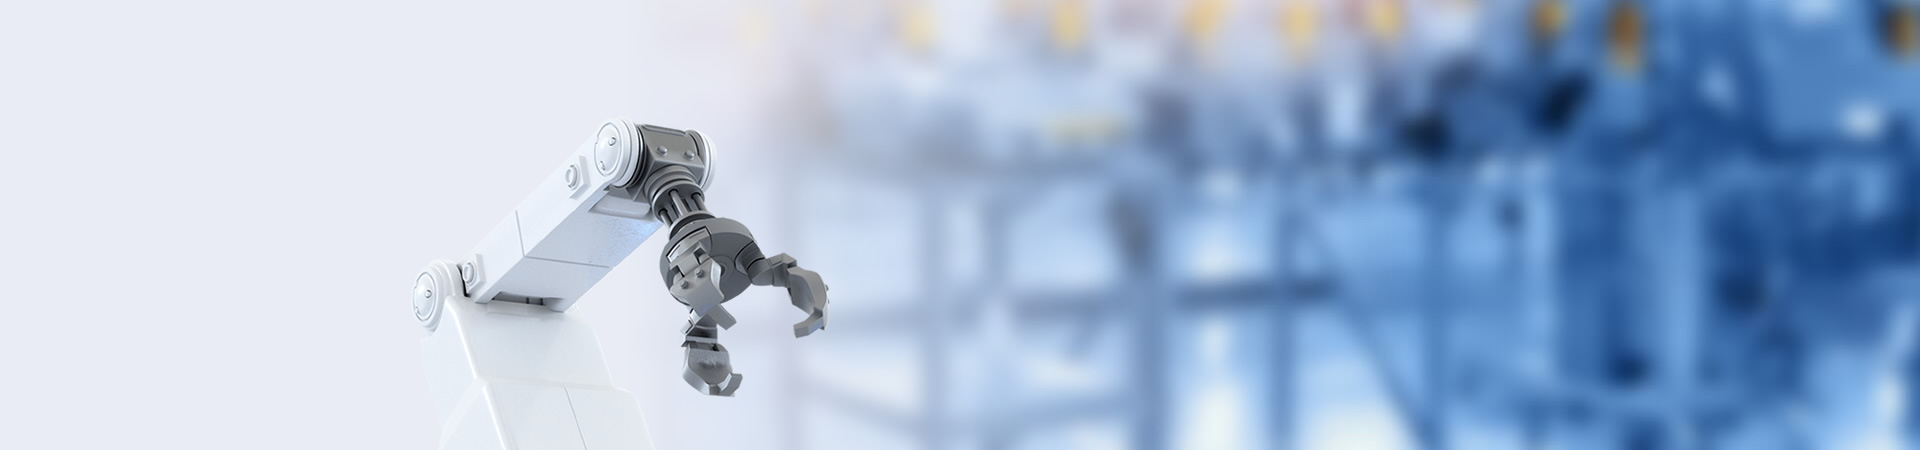 Tinsmith 150W 중공 축 브러시리스 전기 DC 서보 로봇 암 조인트 모듈 미니 프레임리스 외골격 방수 BLDC 고 토크 AC 로봇 액츄에이터 모터